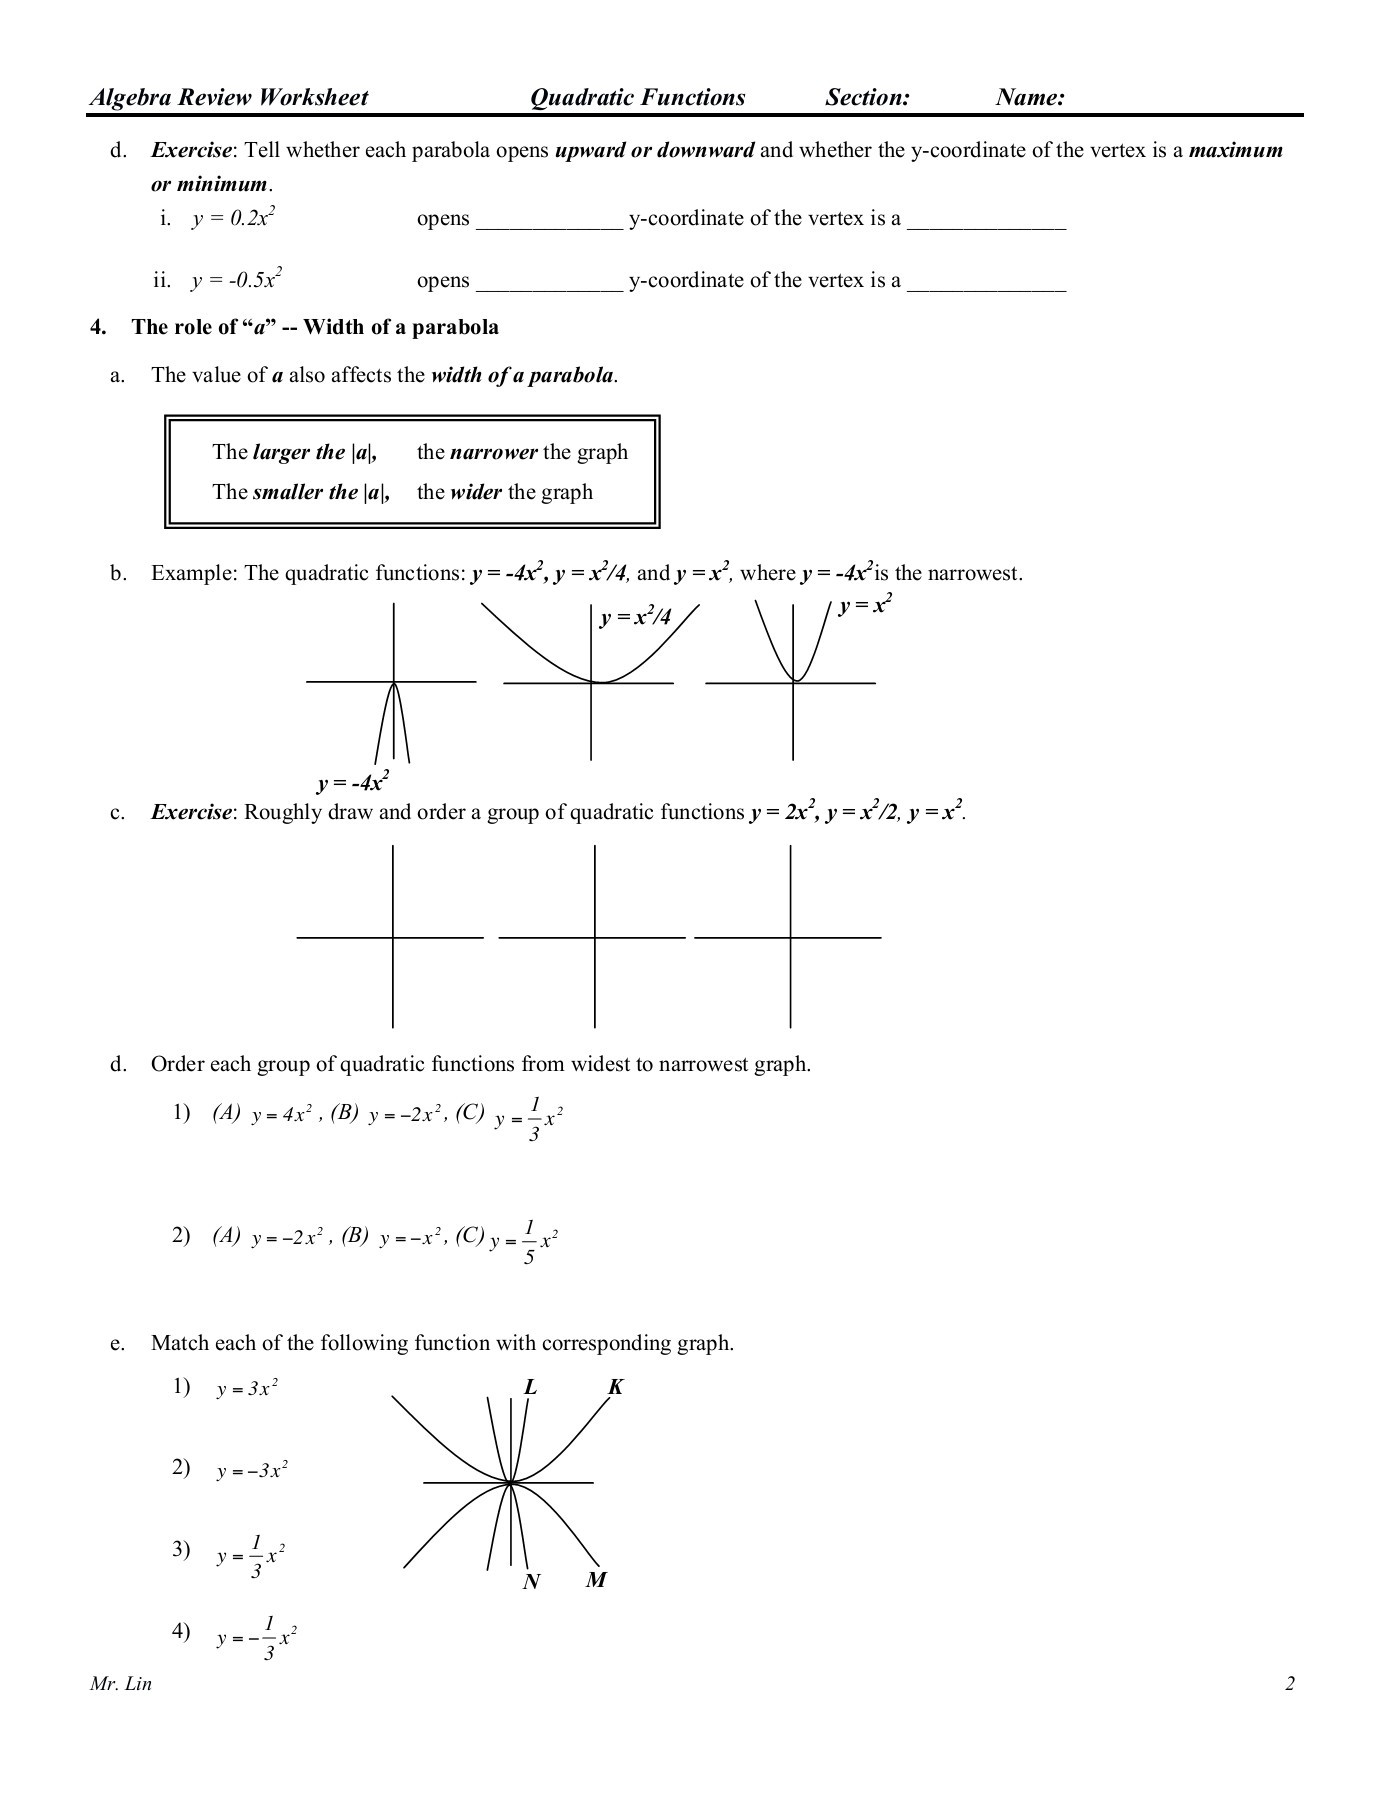 Quadratic Functions Worksheet Answers Algebra Worksheet 09 Qudratic Functions Pages 1 5 Text